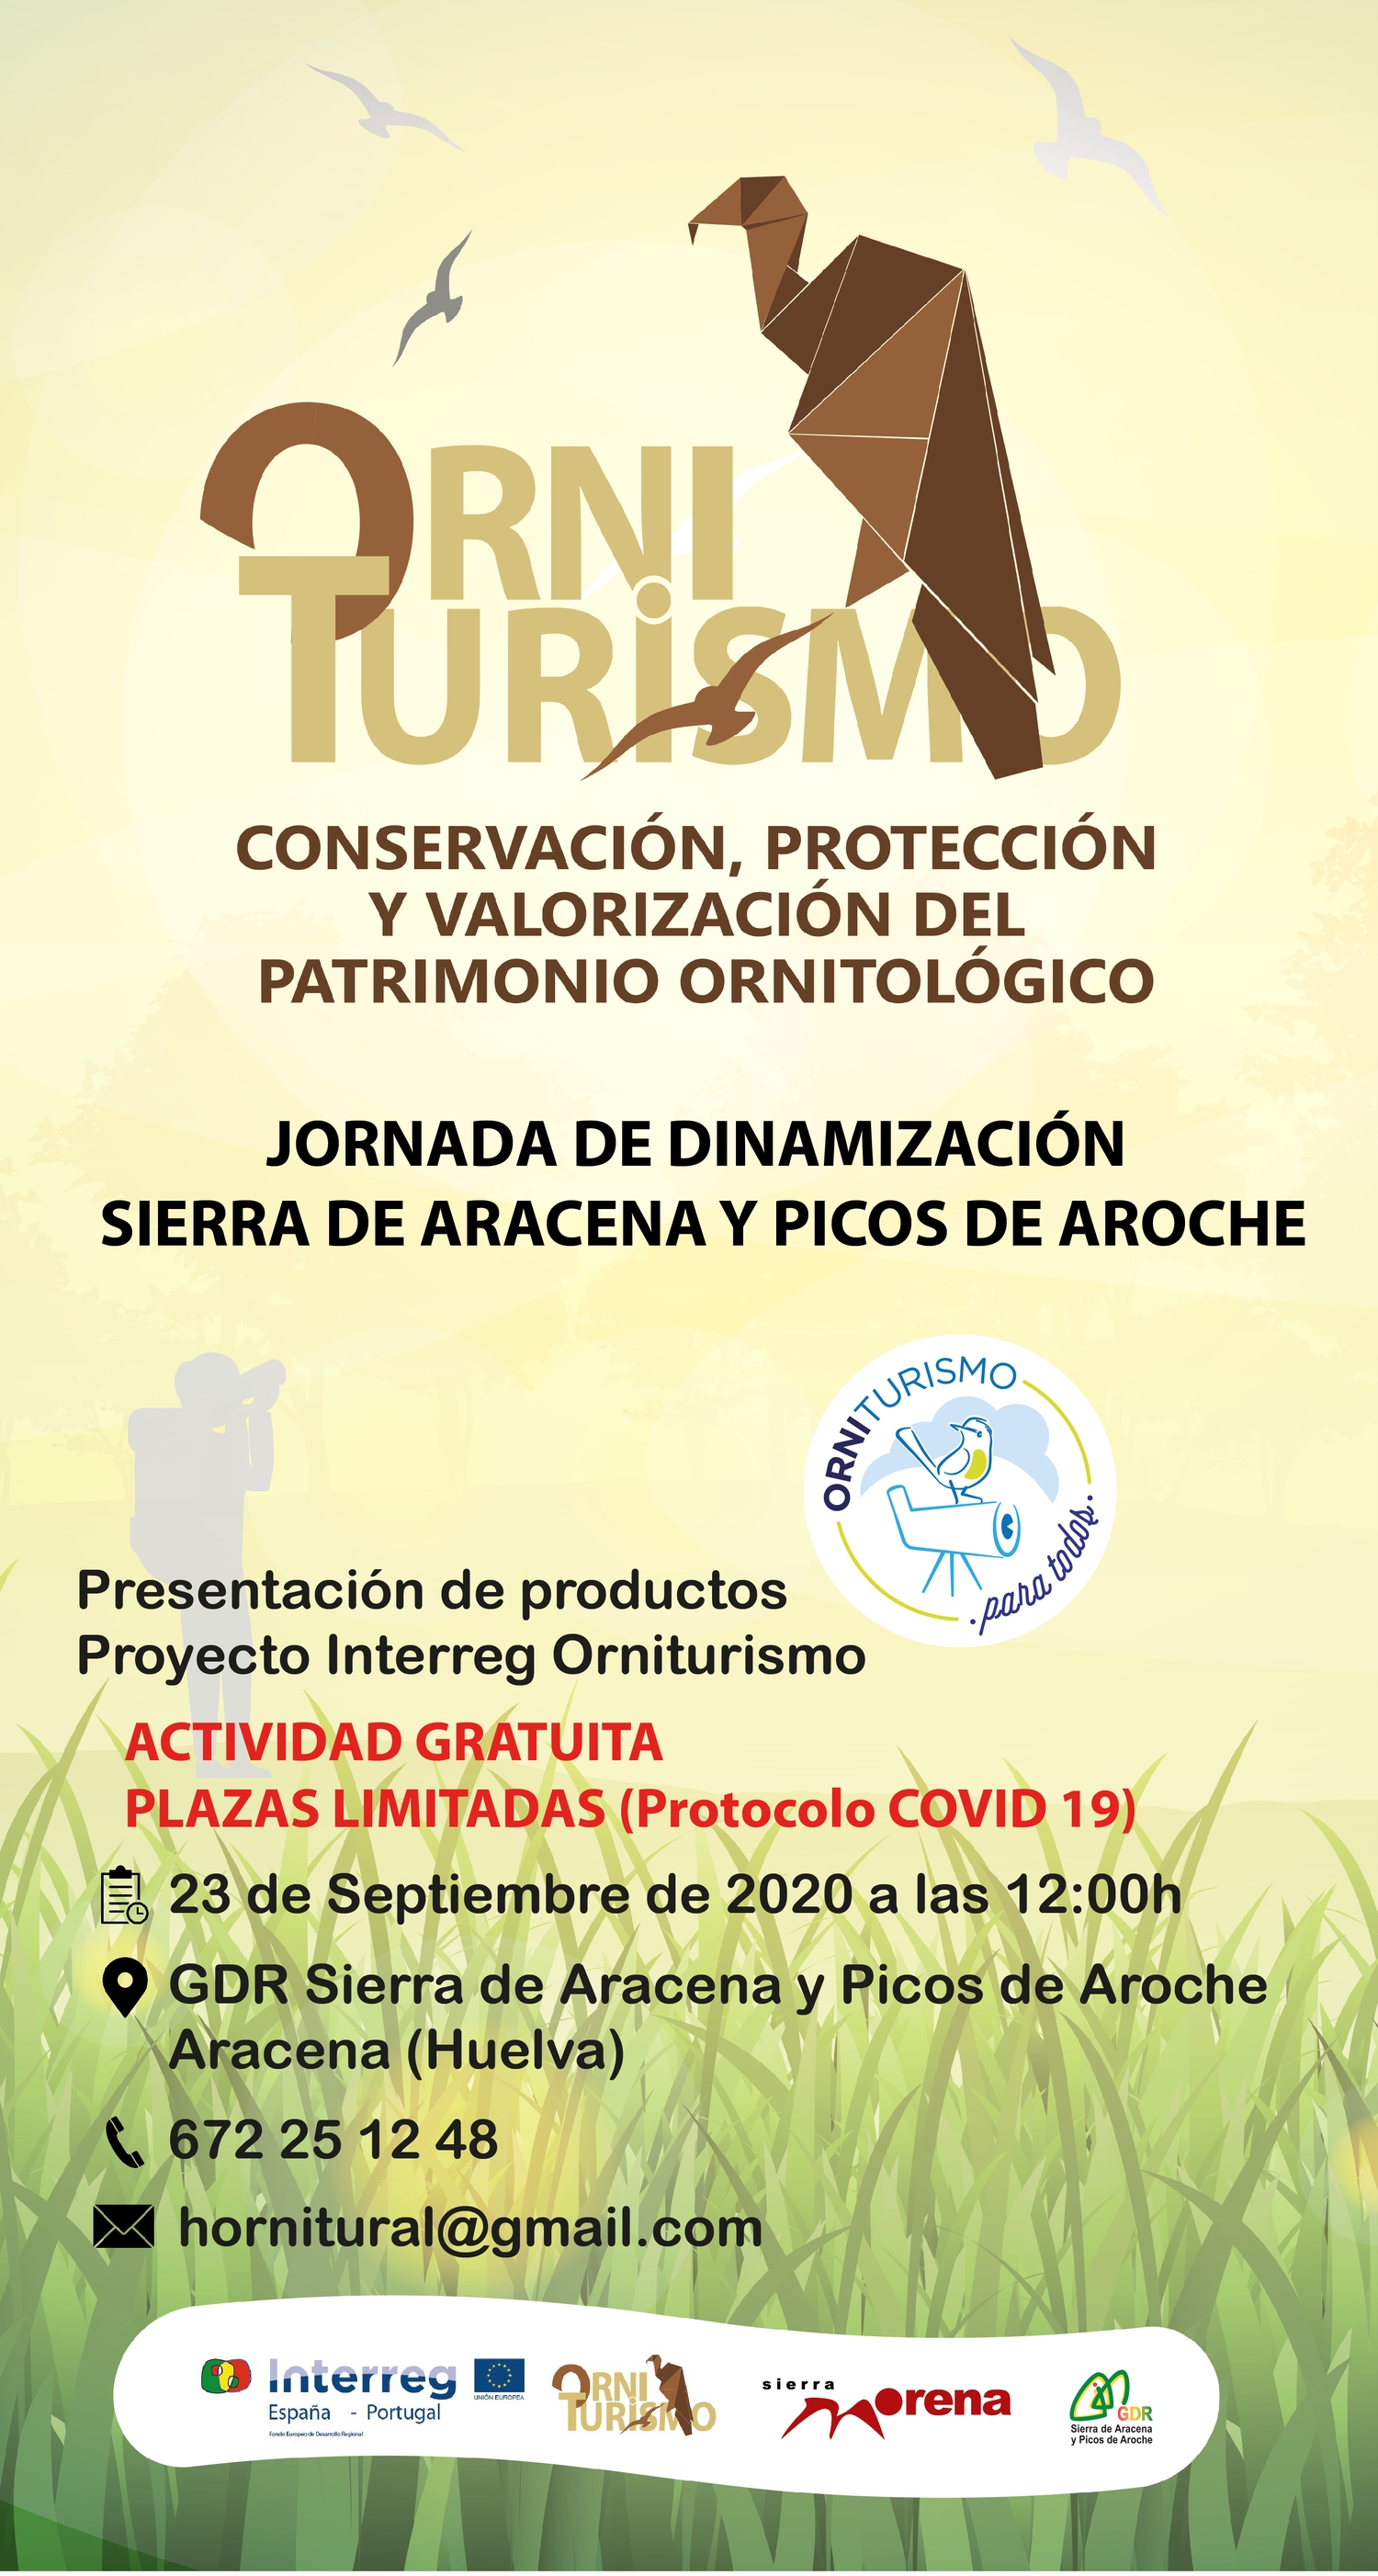 Jornada de dinamización Sierra de Aracena y Picos de Aroche en Aracena (23/09/2020)